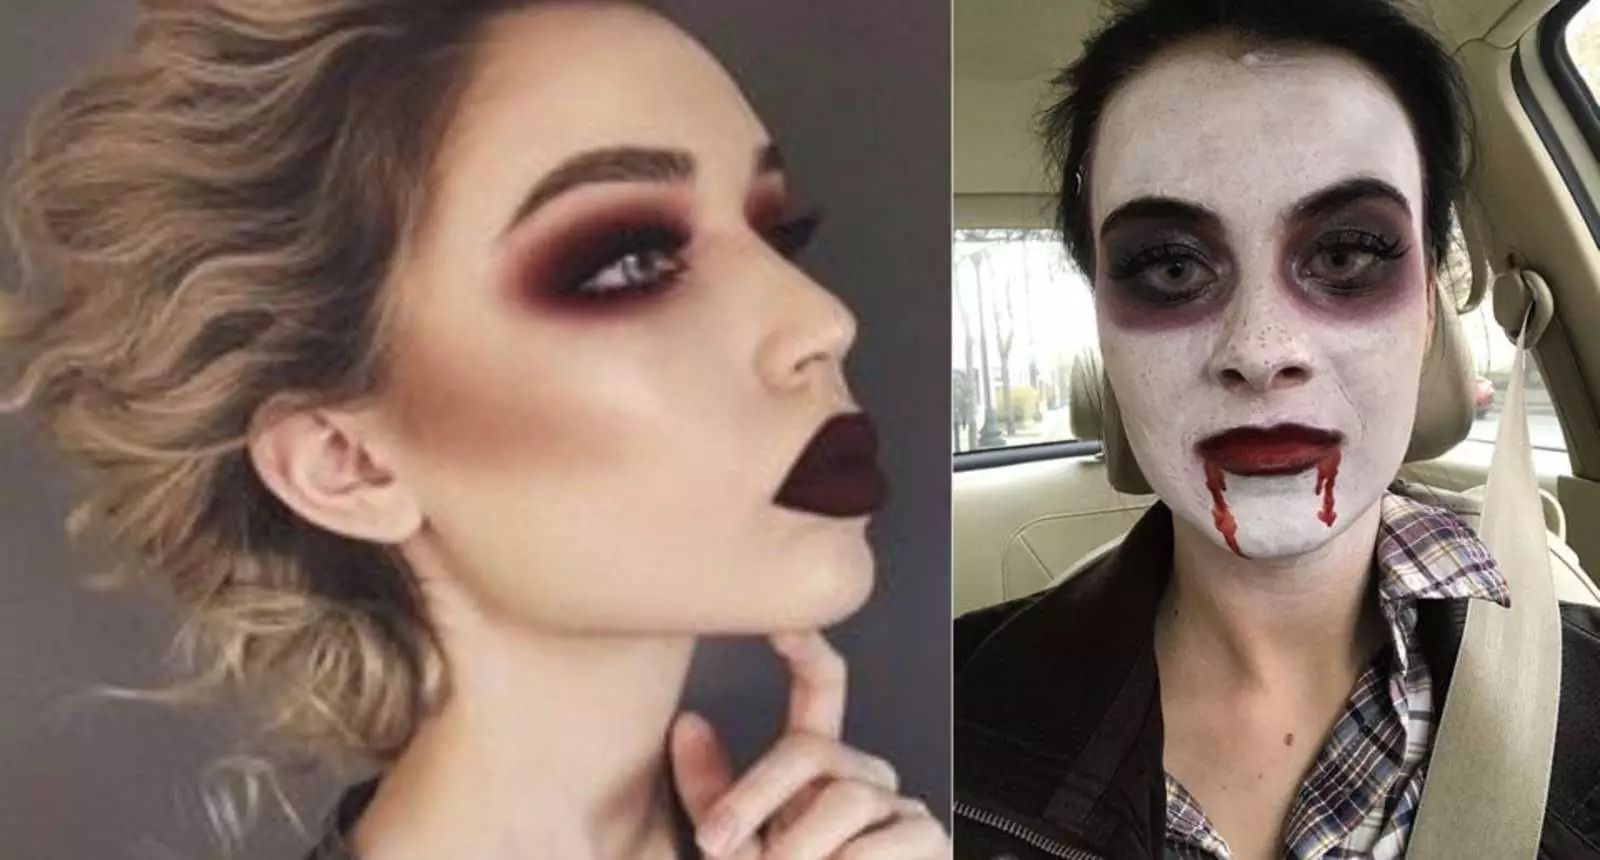 "«Профессиональный» макияж на Хэллоуин за 60 долларов. Я попросил фото слева, только с небольшим количеством фальшивой крови. Справа то, что мне дал визажист".